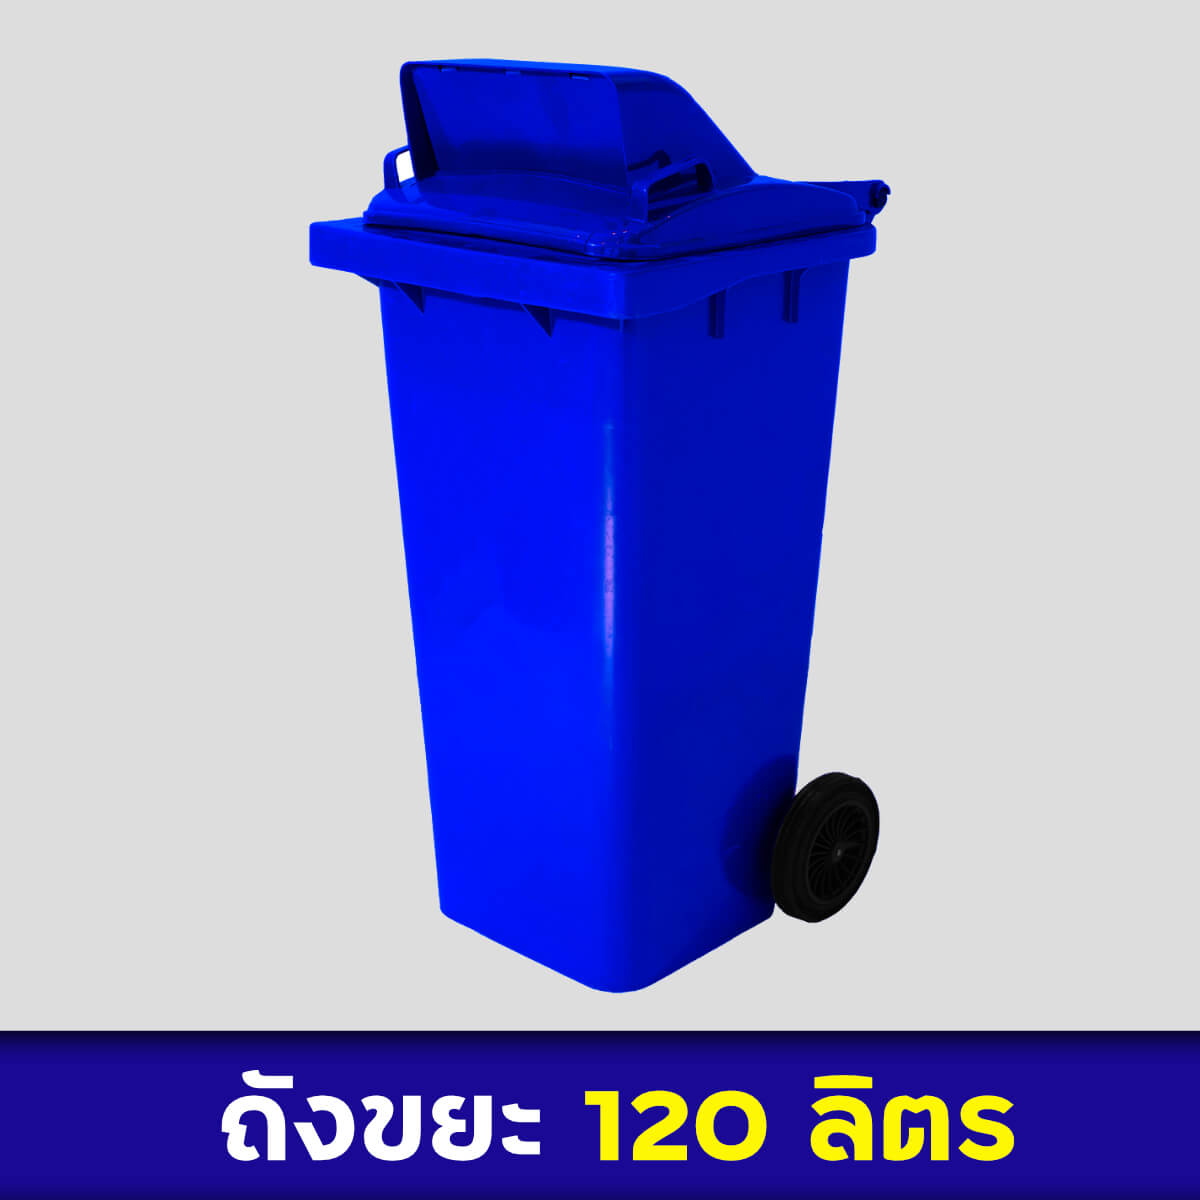 ถังขยะสีน้ำเงิน 120ลิตร